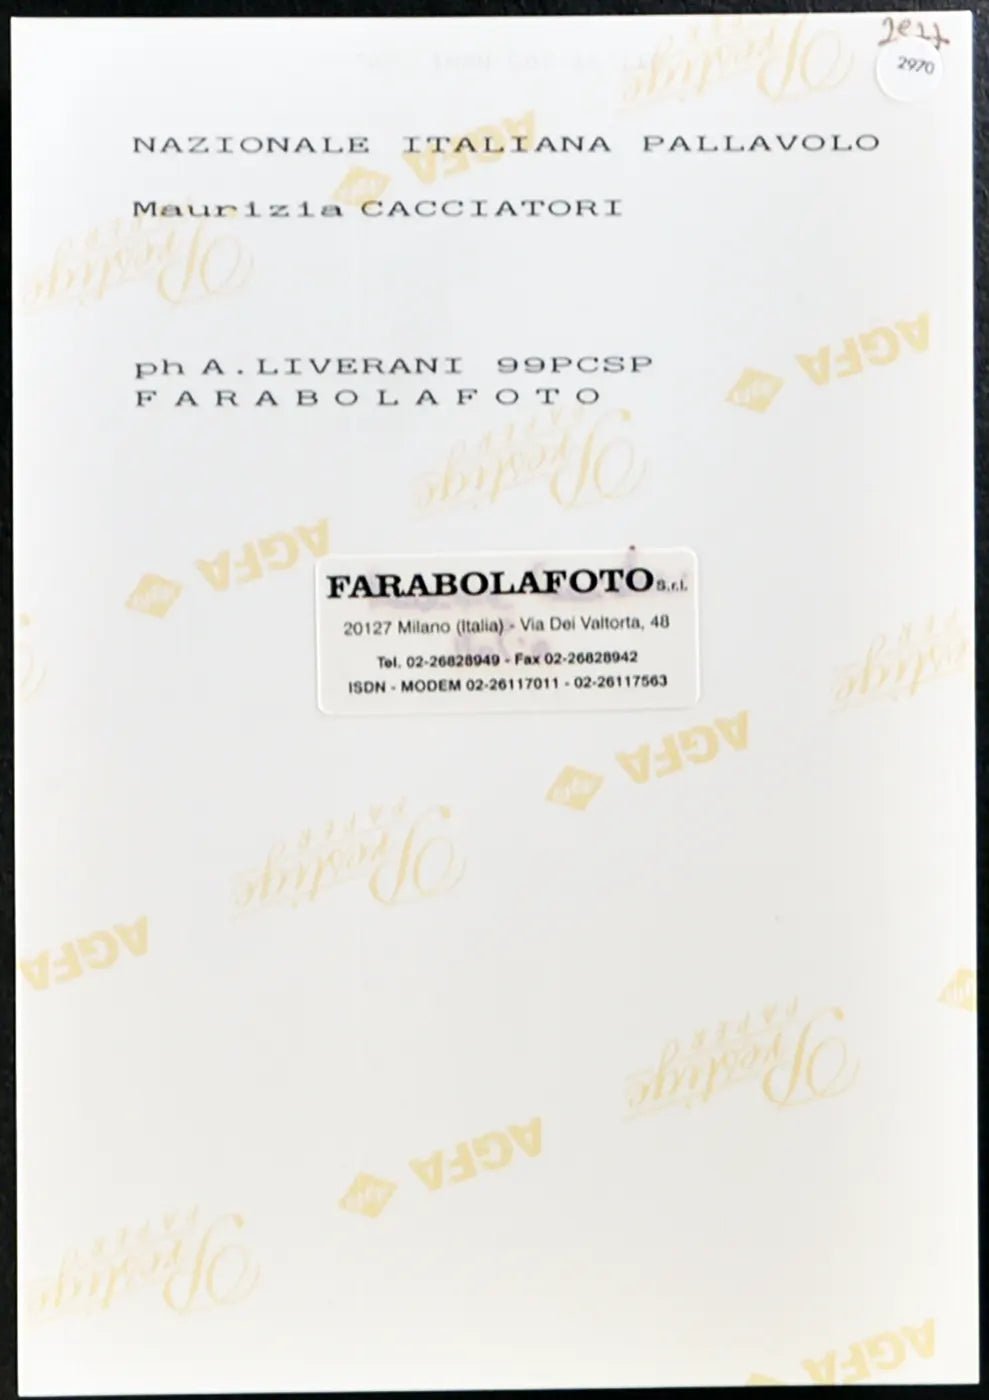 Cacciatori Nazionale Pallavolo 1999 Ft 2970 - Stampa 20x15 cm - Farabola Stampa ai sali d'argento